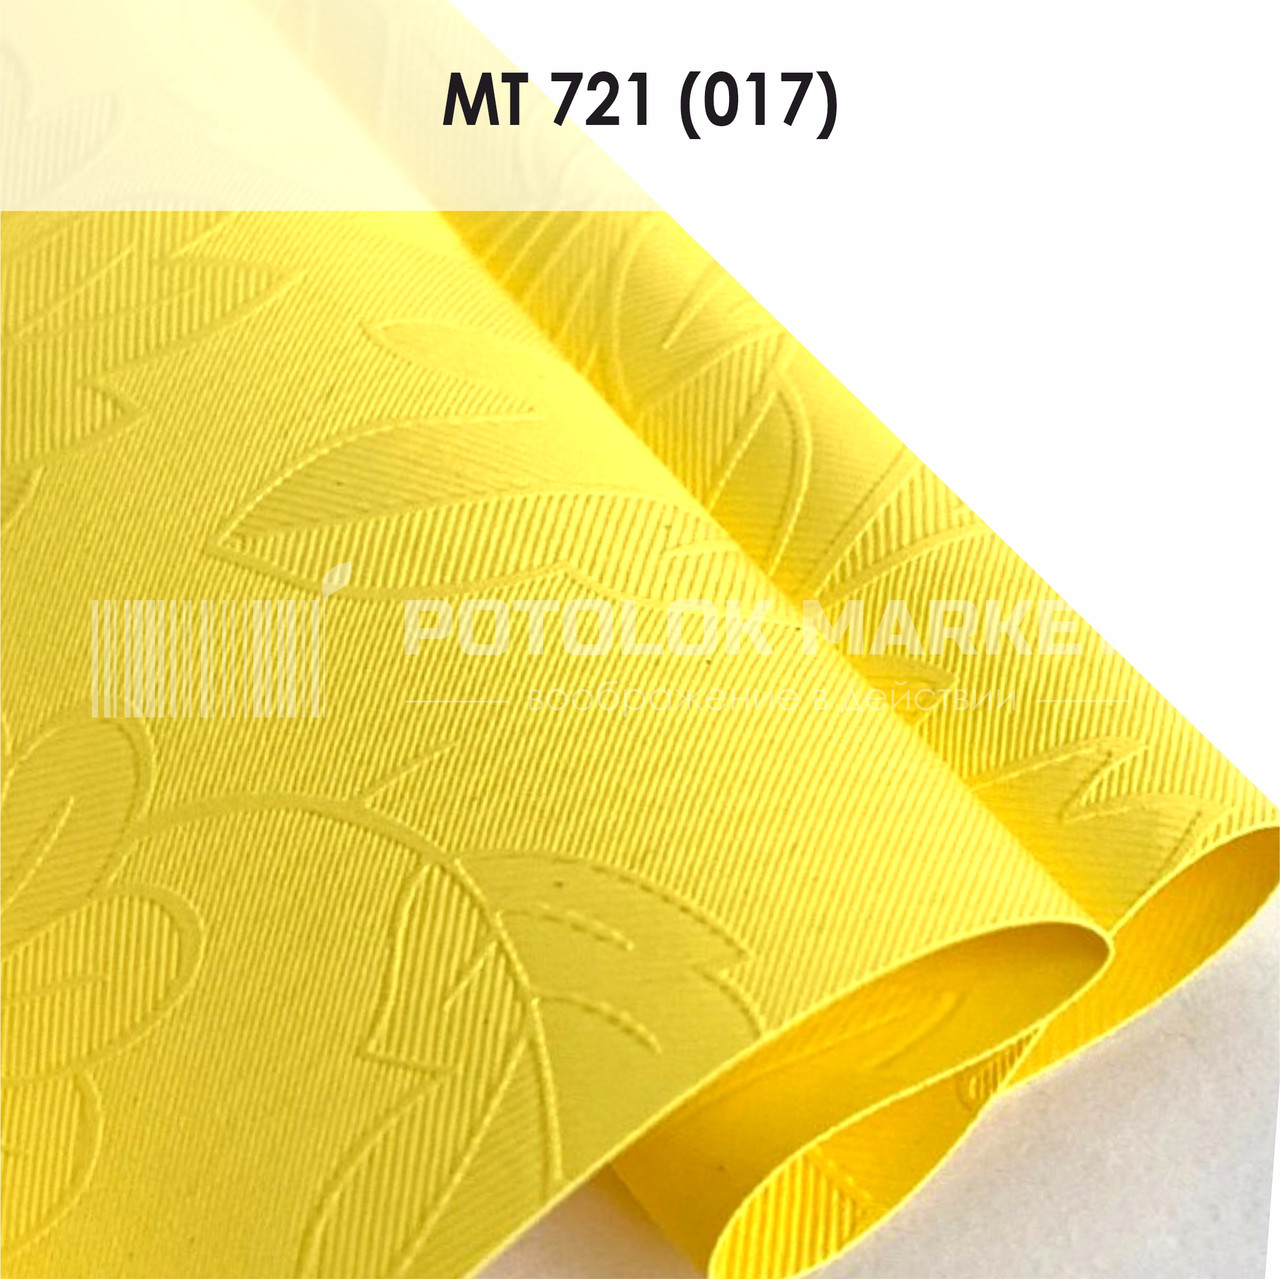 MT 721 (017) "Листочки" (ширина до 3,2 мп). Текстурна ПВХ плівка